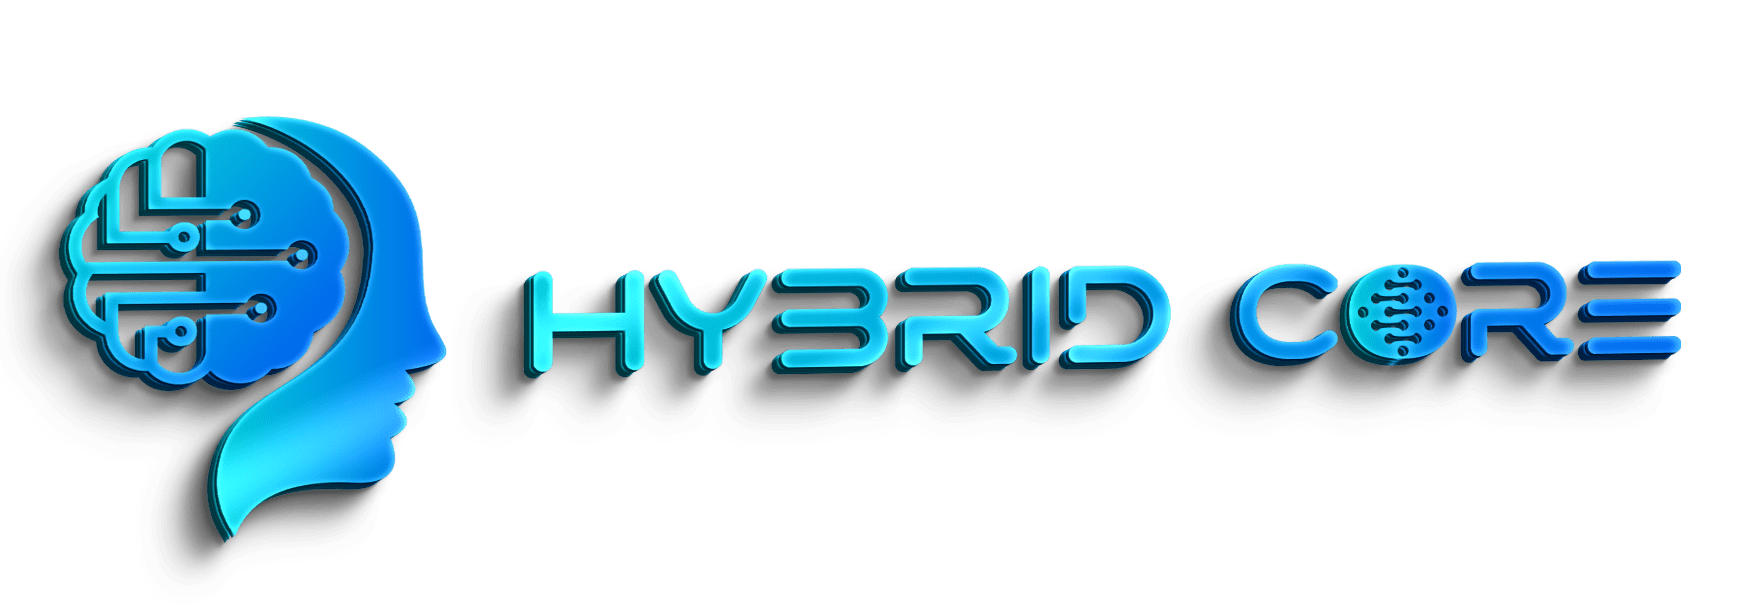 HYBIRD CORE logo 3D